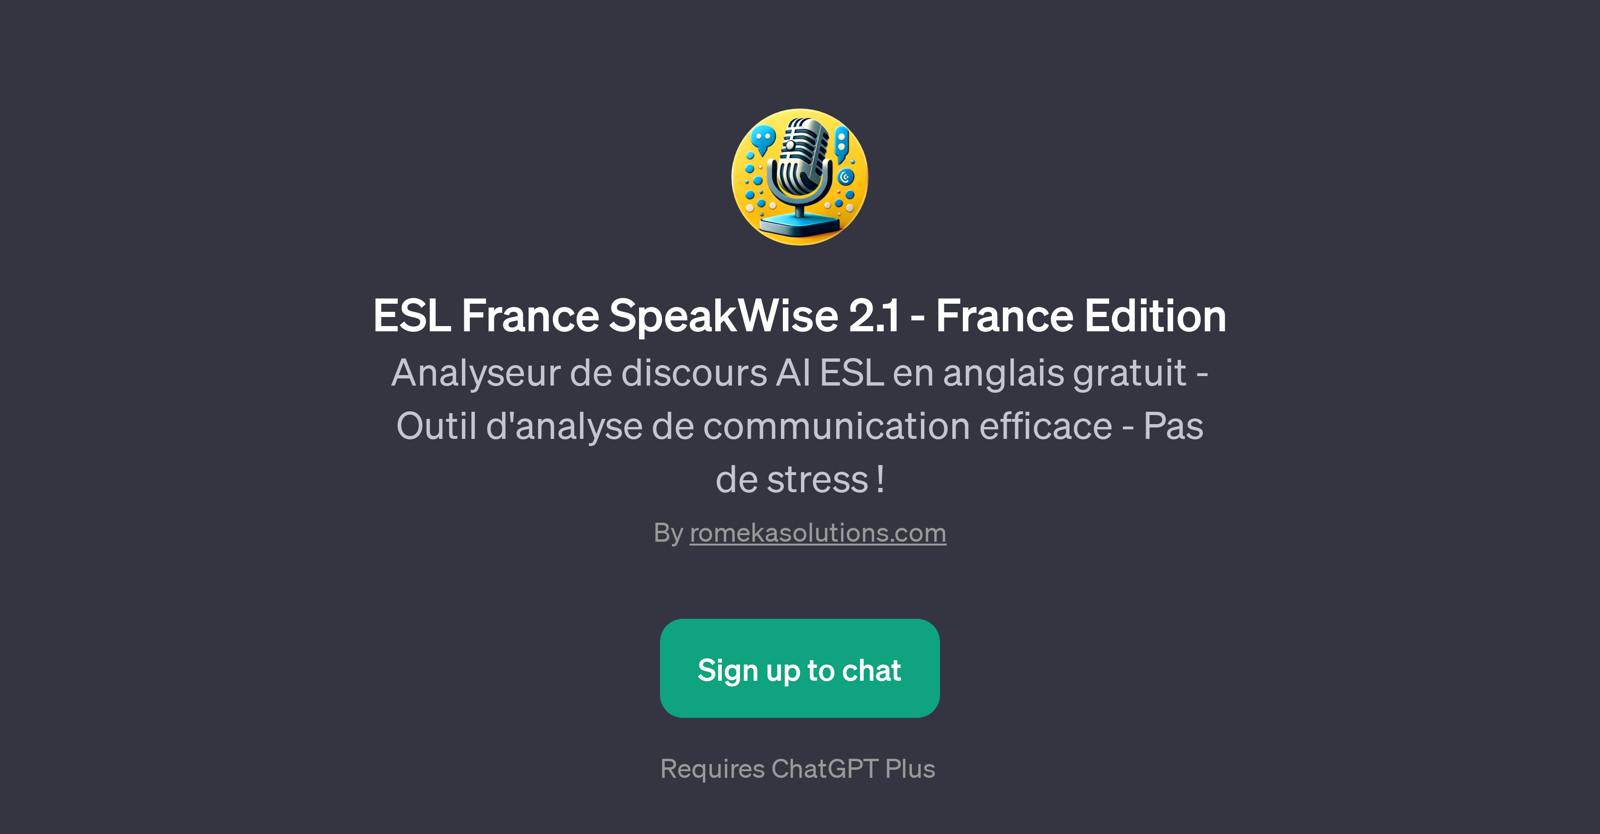 ESL France SpeakWise 2.1 - France Edition website